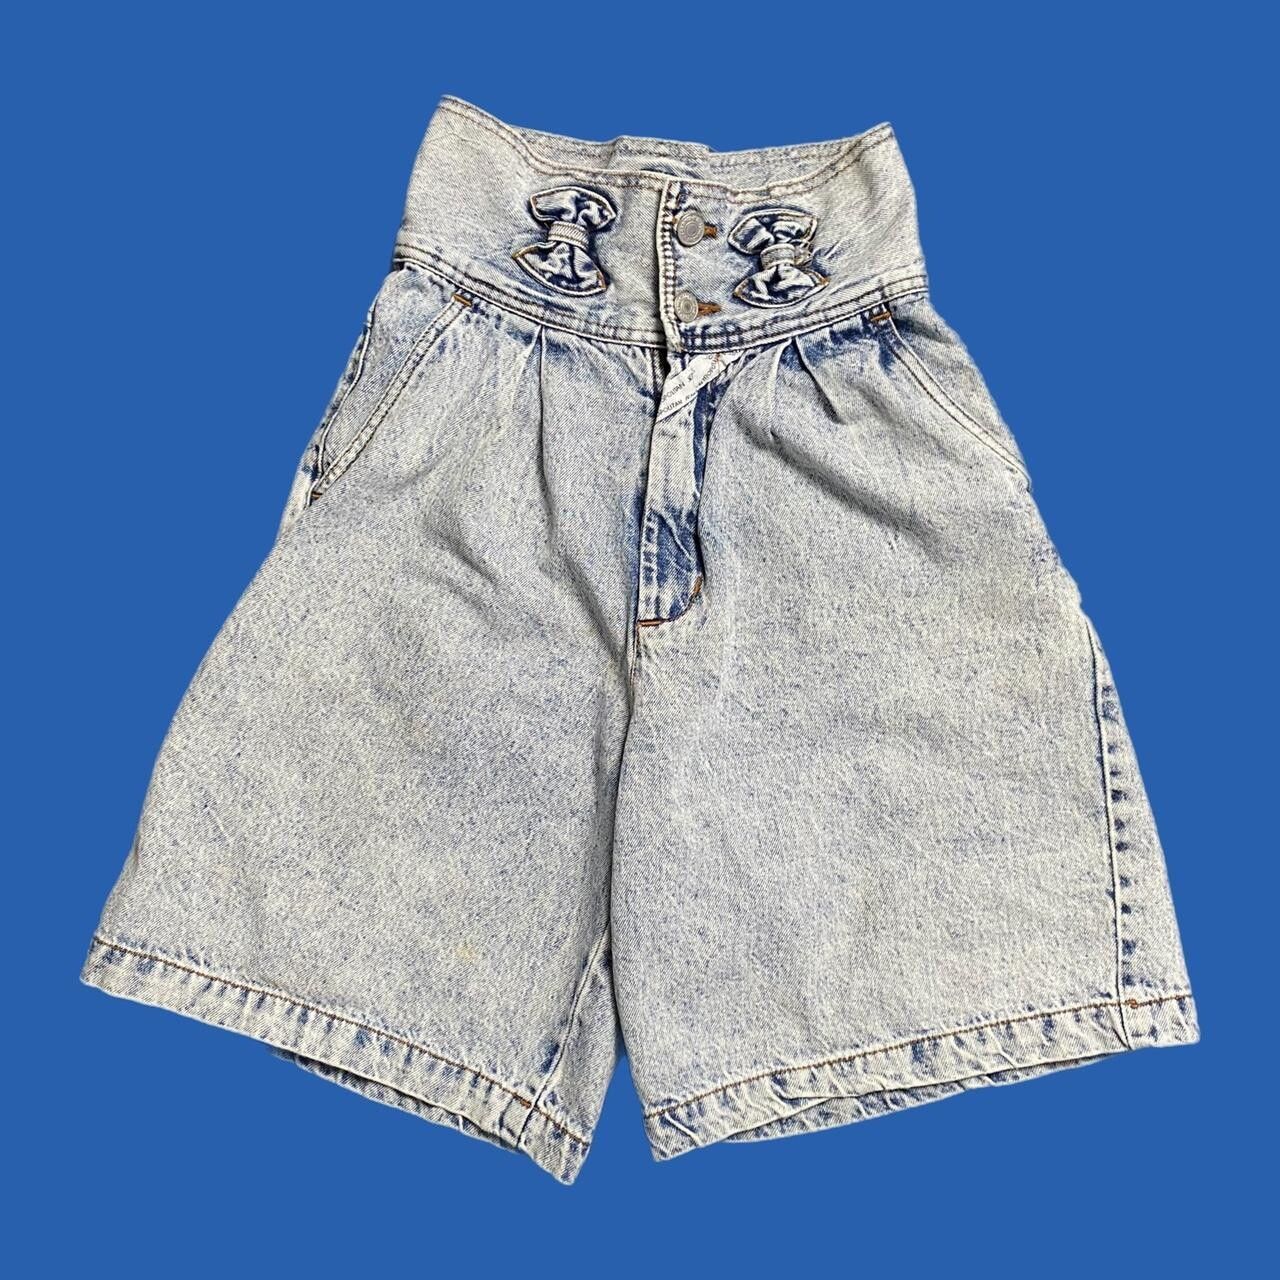 Vintage vintage jordache denim shorts Size US 26 / EU 42 - 1 Preview